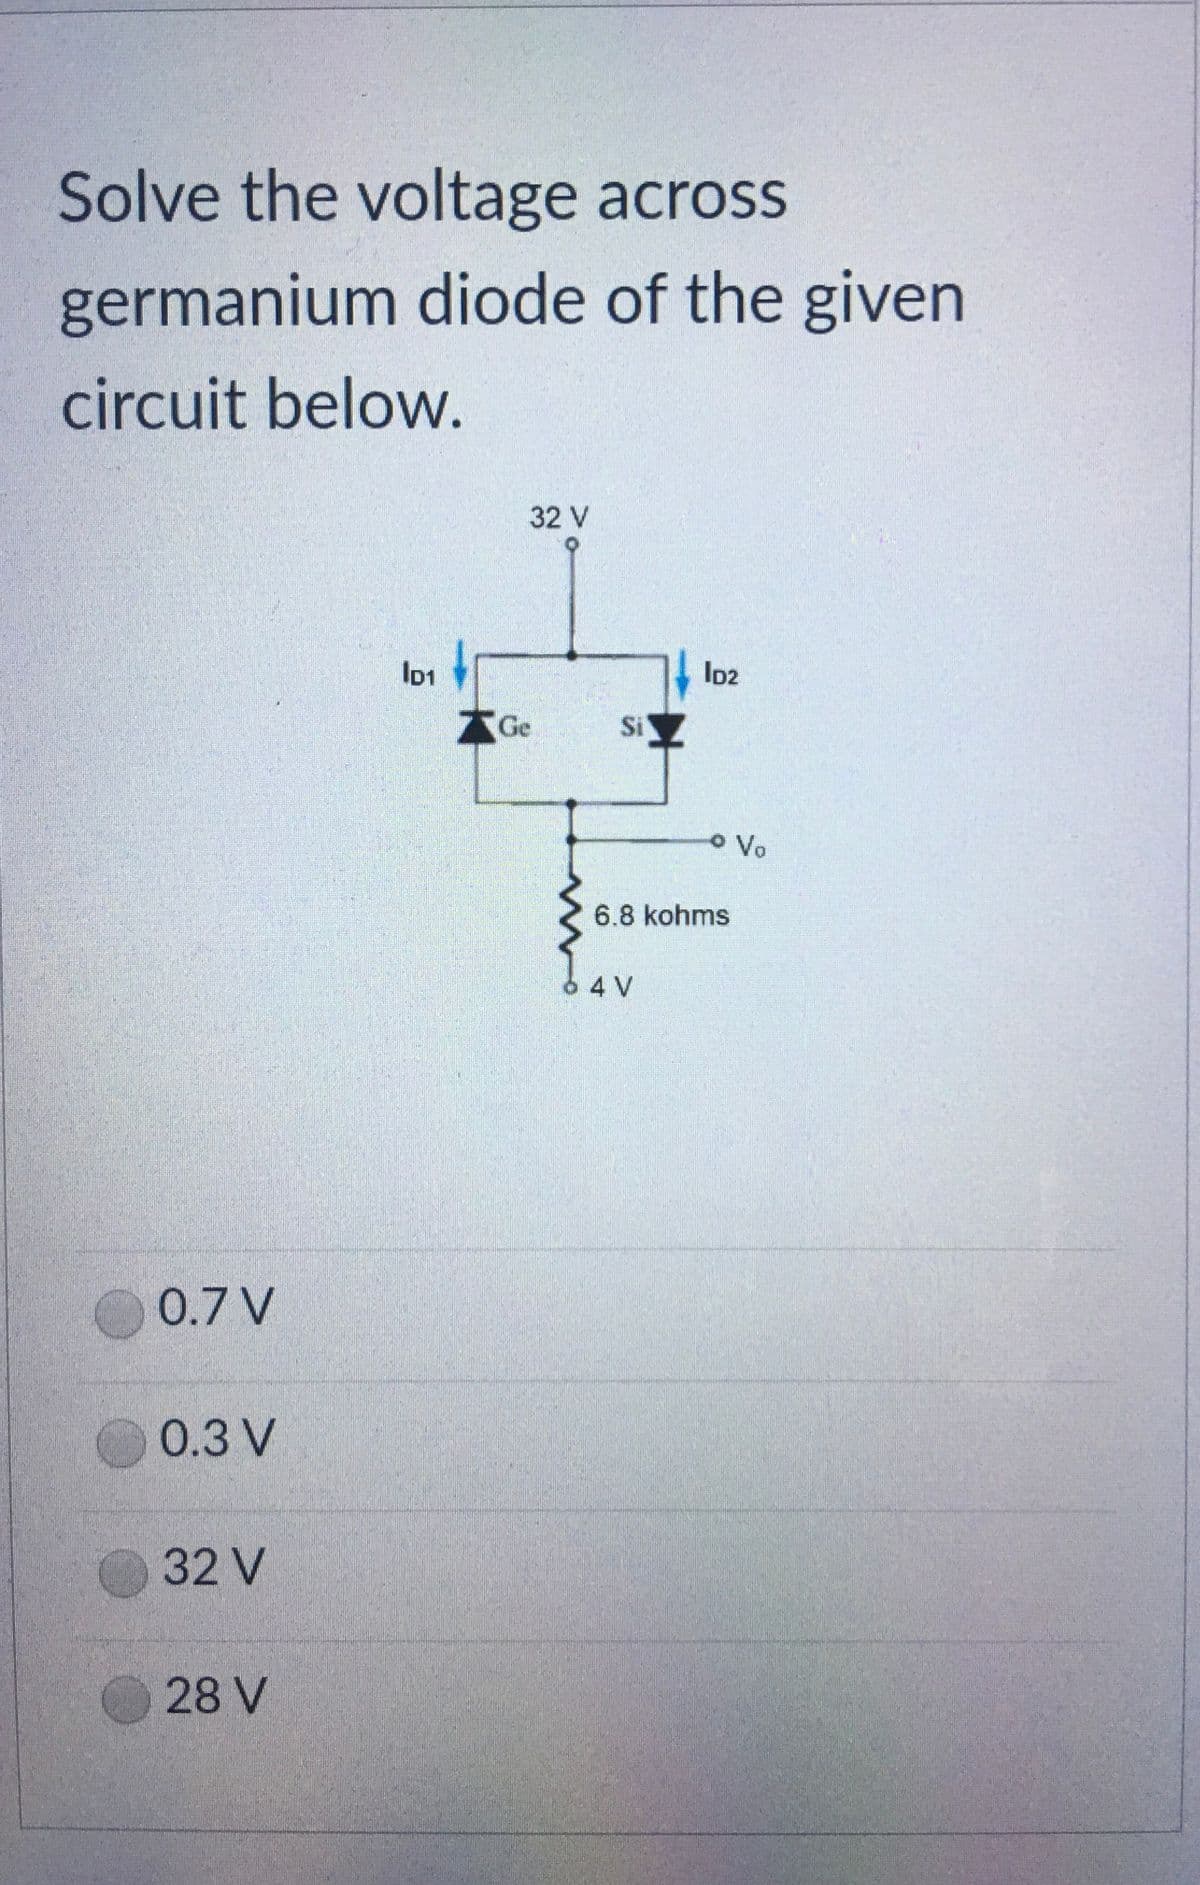 Solve the voltage across
germanium diode of the given
circuit below.
32 V
AGe
Si
OVo
6.8 kohms
64V
0.7 V
0.3 V
32 V
28 V
bor
